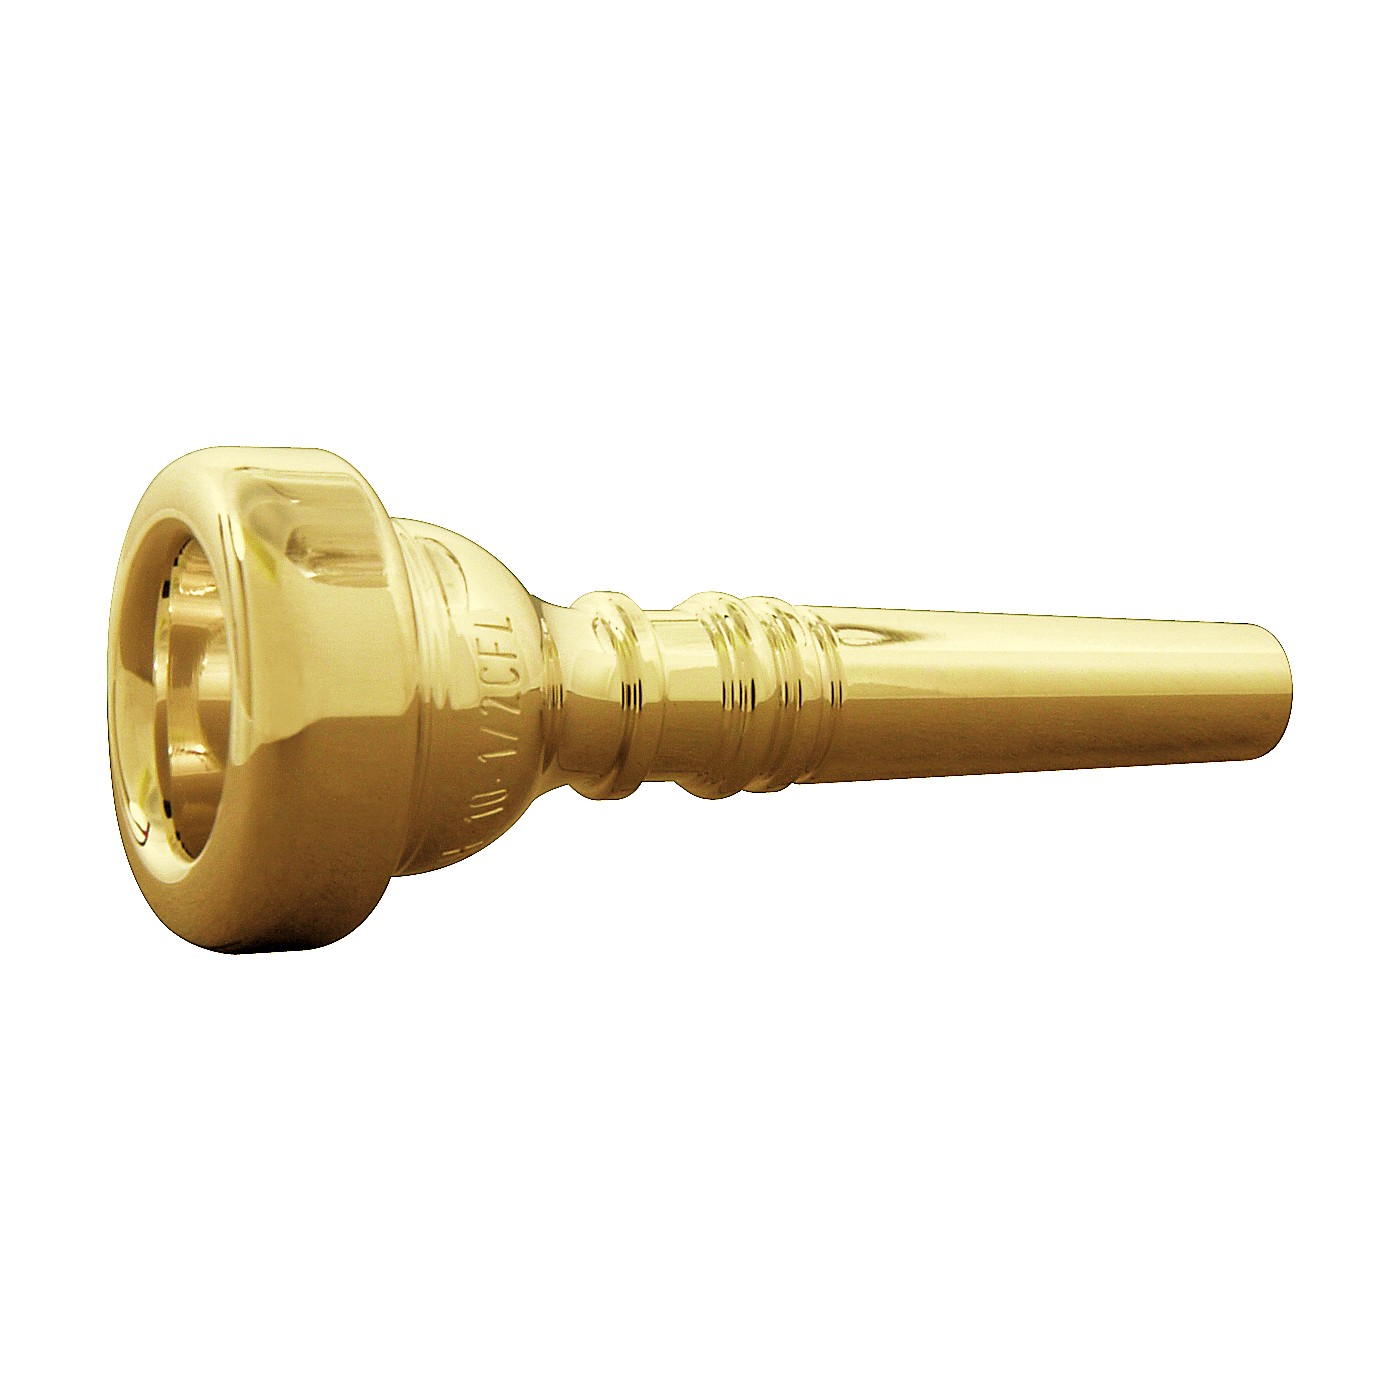 Bach Standard Series Flugelhorn Mouthpiece in Gold Group II thumbnail